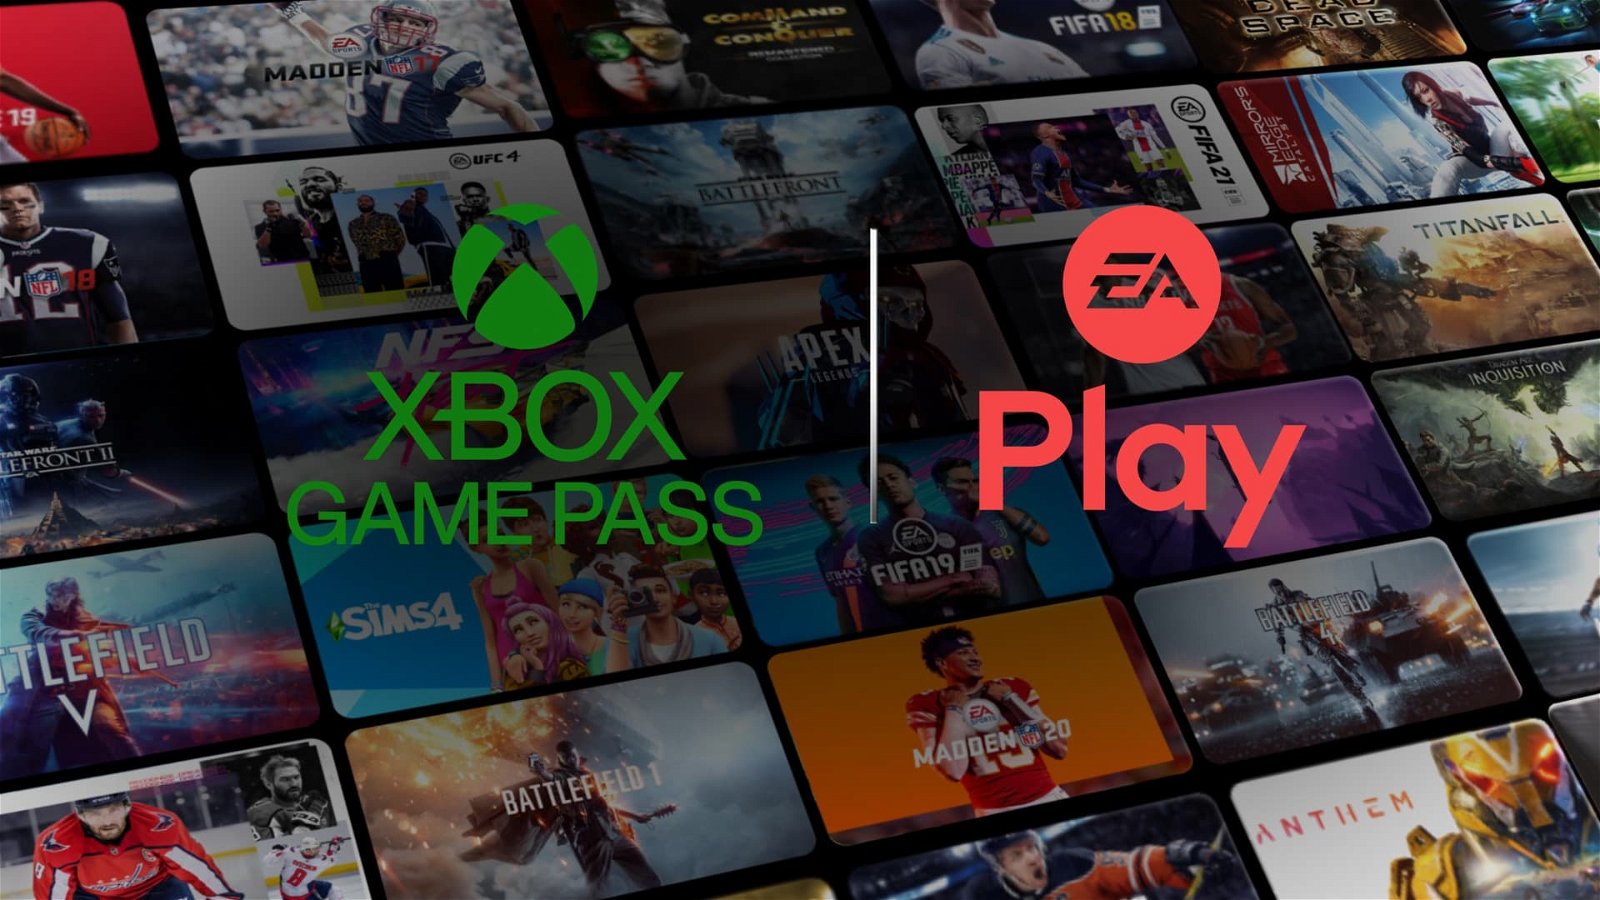 EA Play también apunta a su llegada a Xbox Game Pass en PC